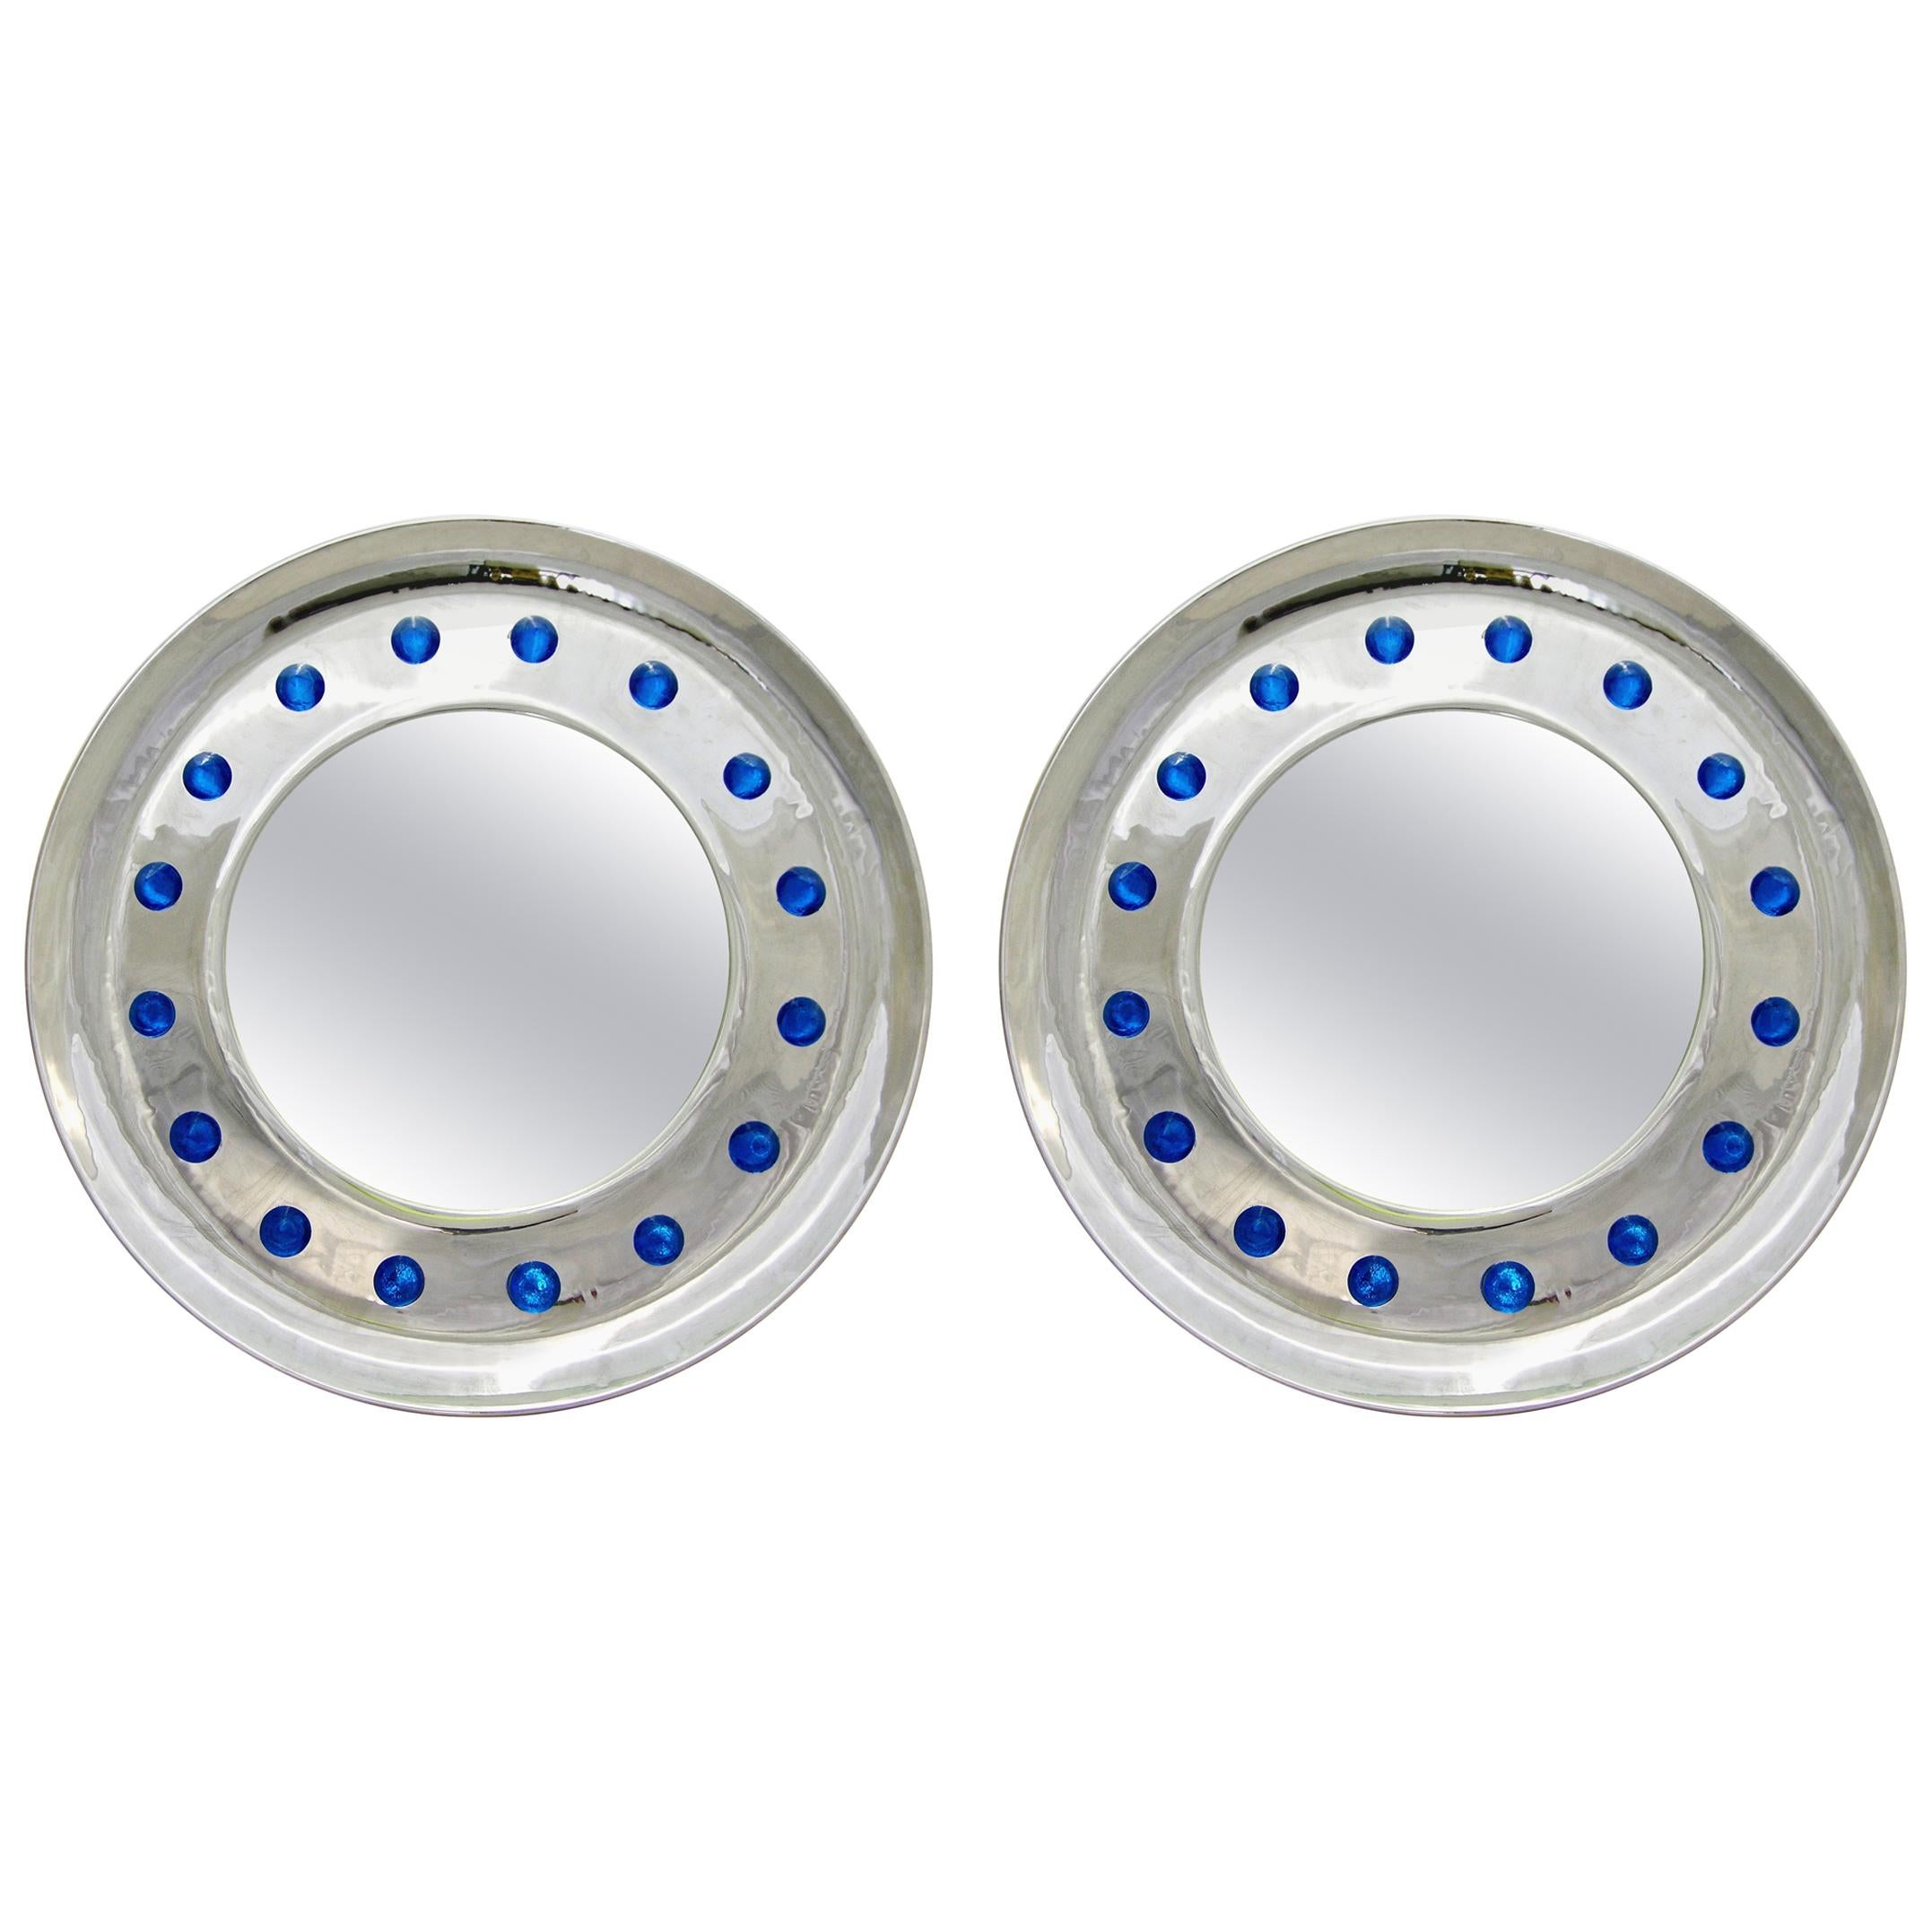 Italian Pair of Modern Nickel Round Mirrors with Jewel like Blue Murano Glass